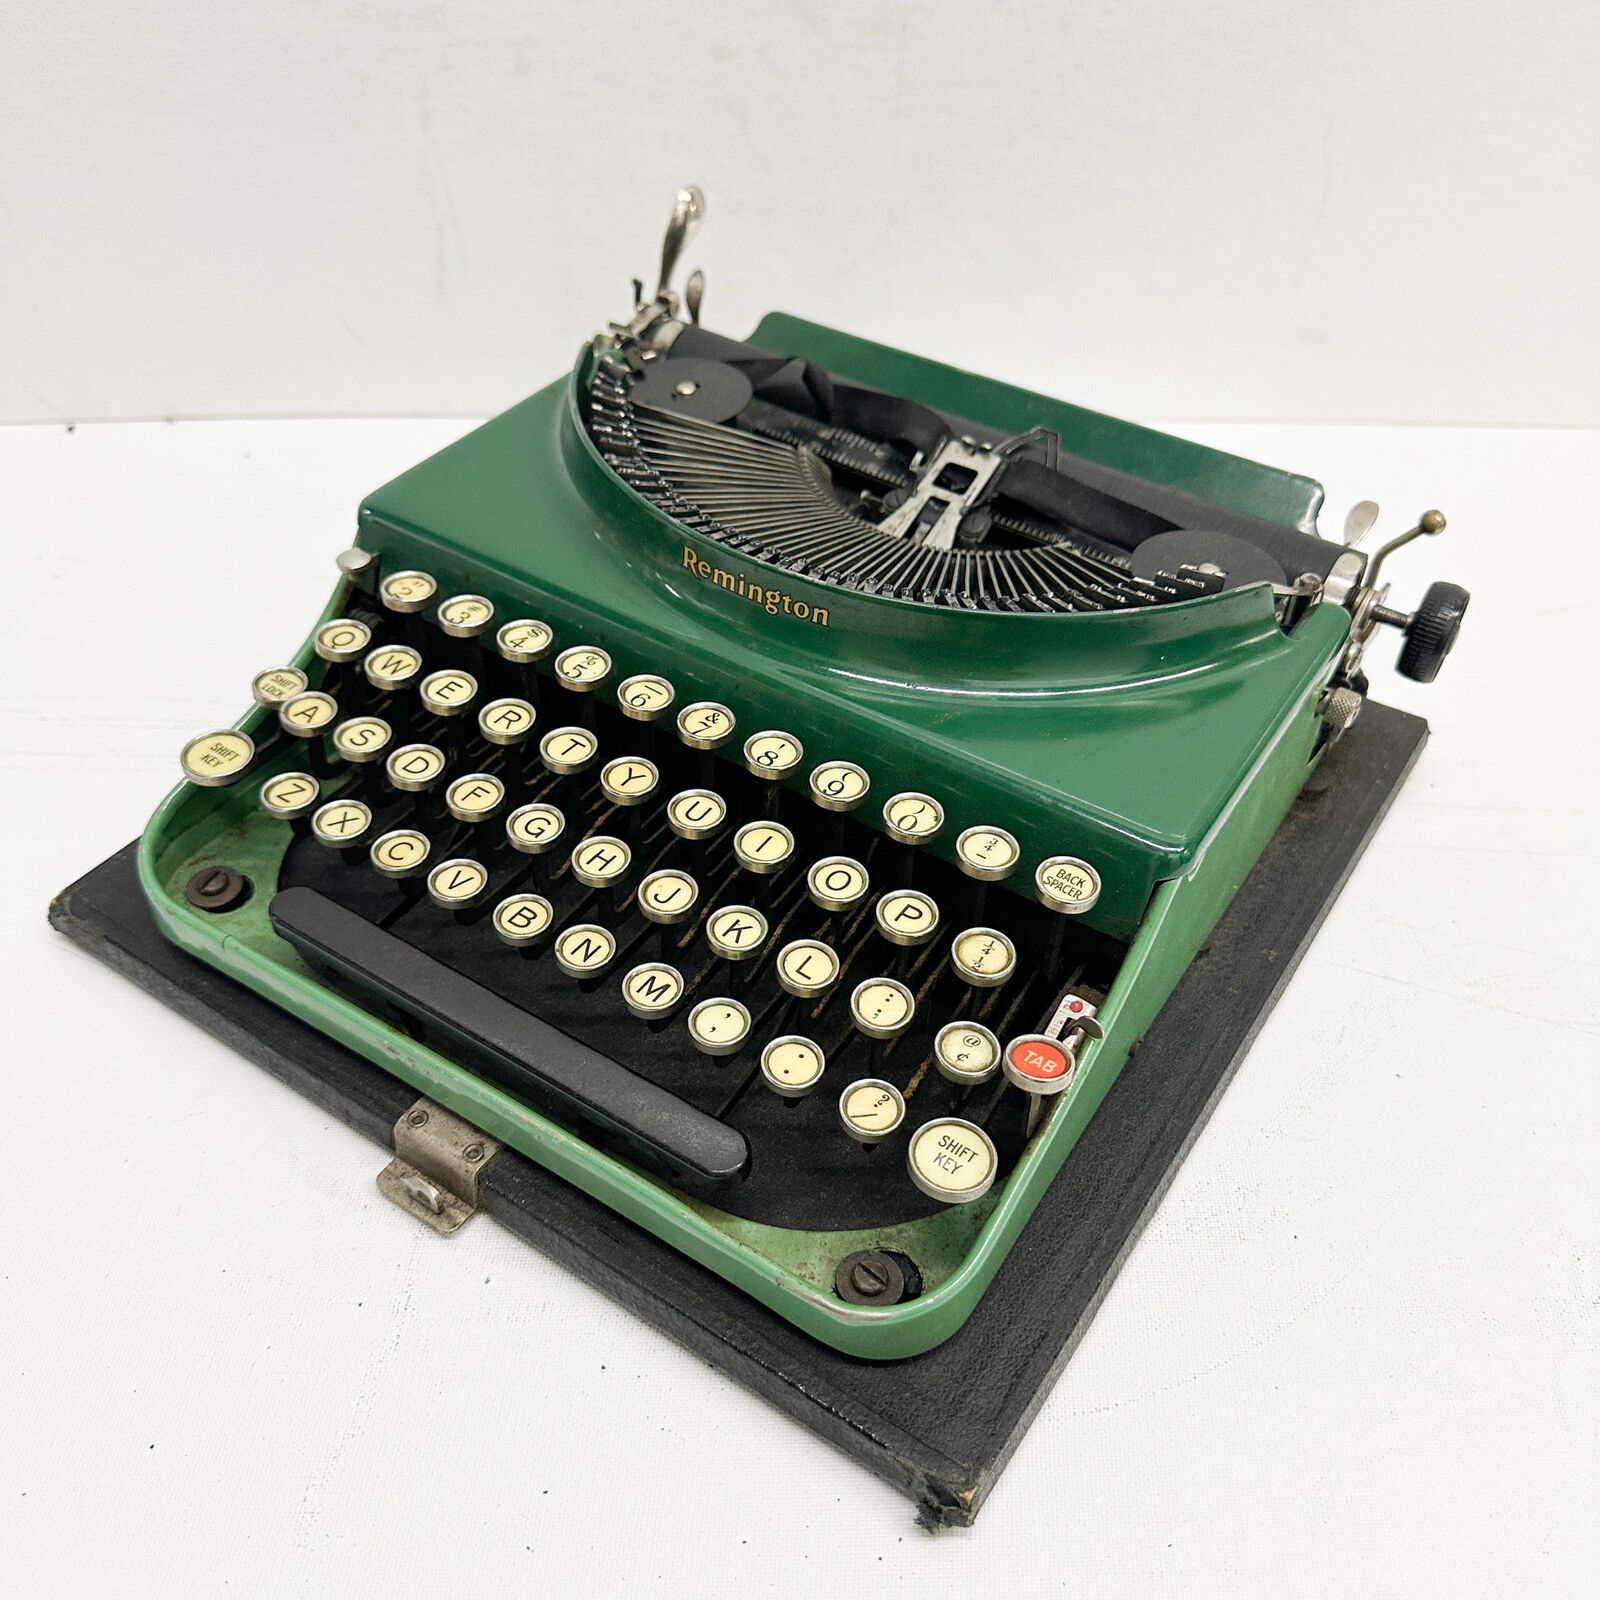 Super Rare 1920s Remington Portable Manual Typewriter in Green